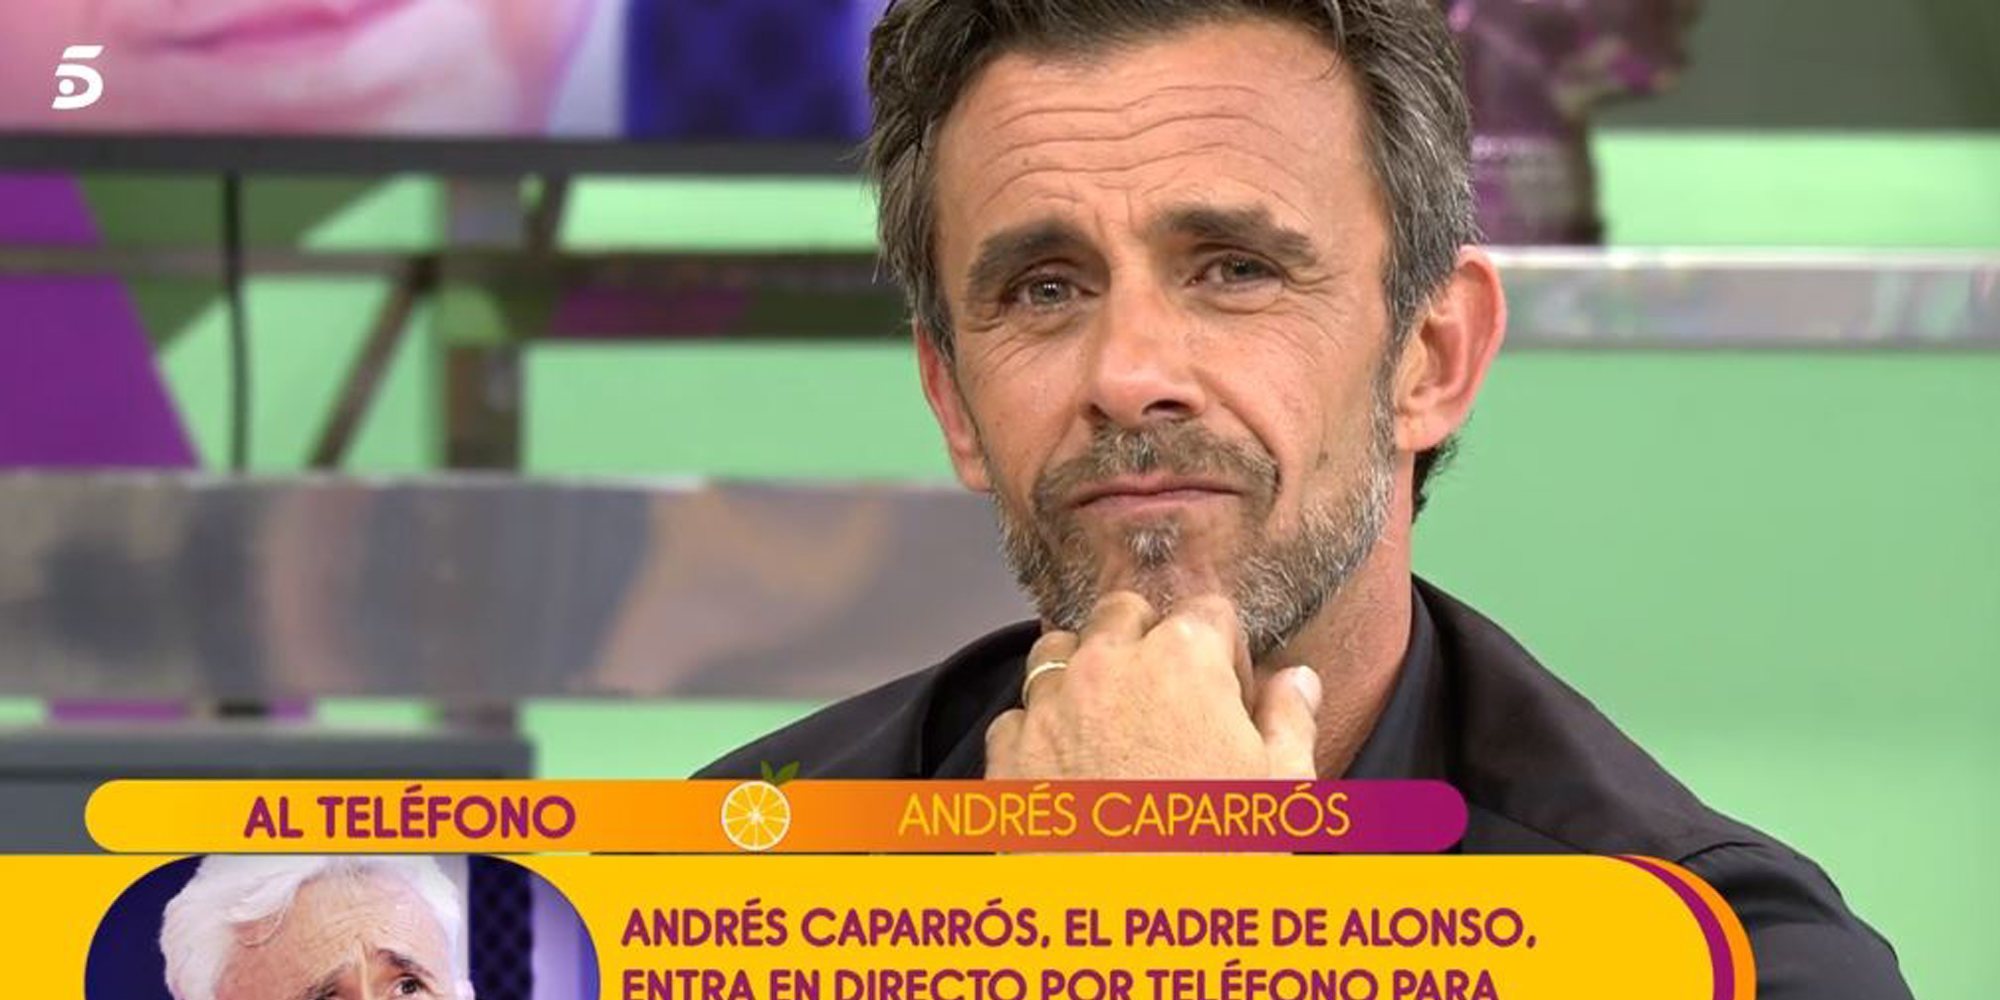 La emotiva reconciliación de Alonso Caparrós y su padre en 'Sálvame': "Te quiero infinitamente"